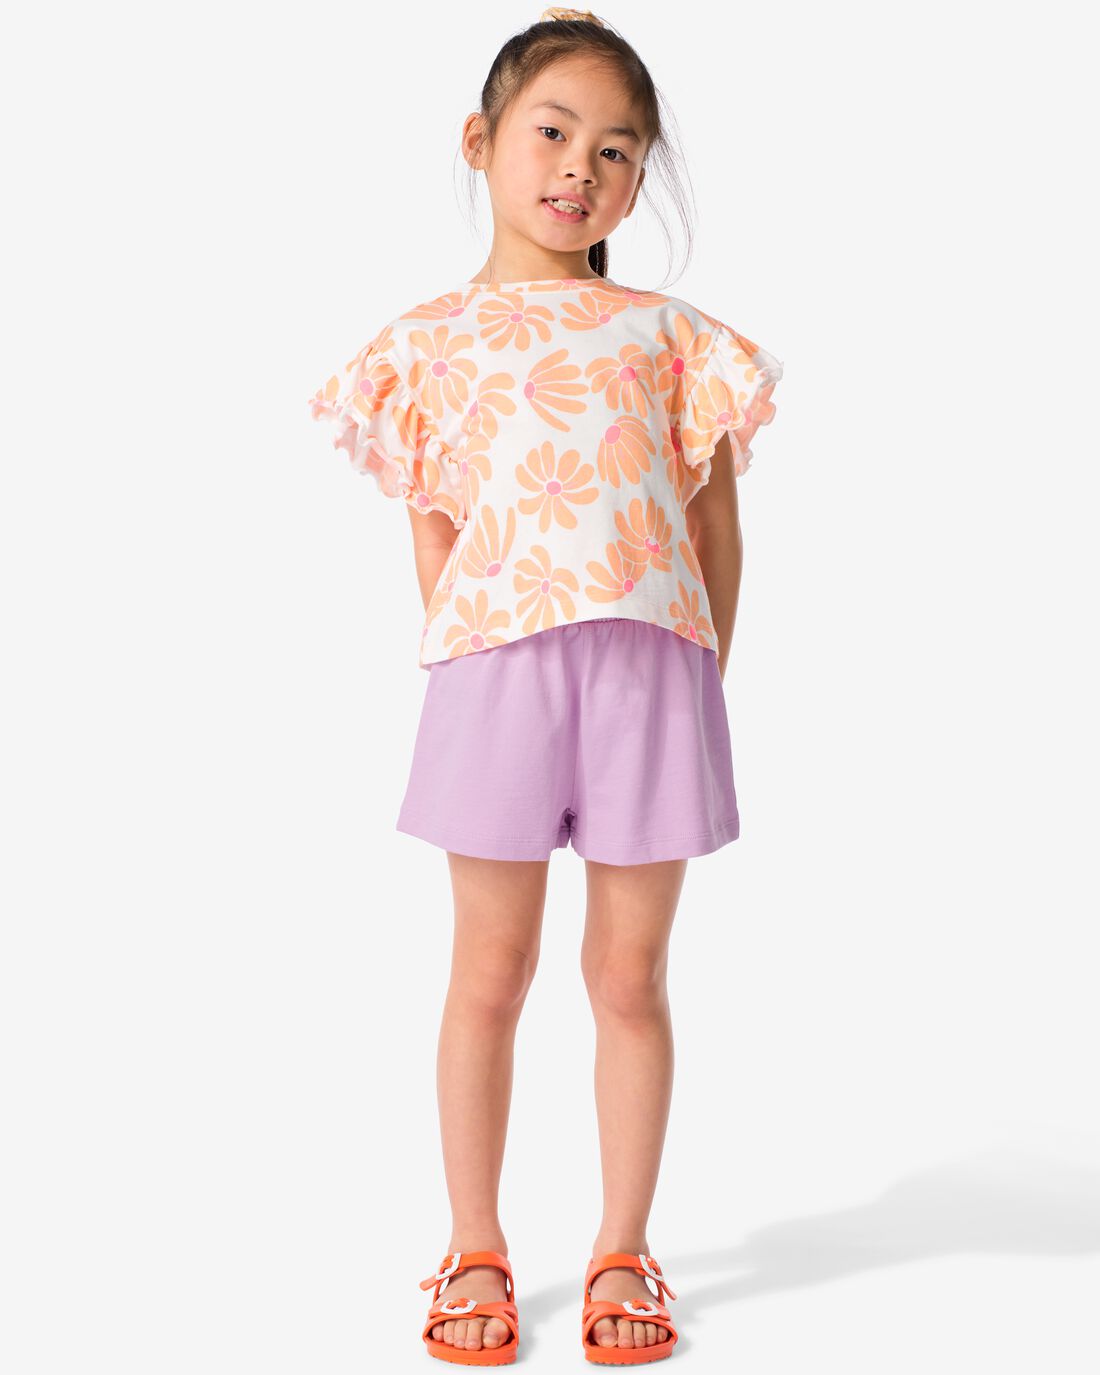 HEMA Kinder Kledingset T-shirt En Short Katoen Roze (roze)